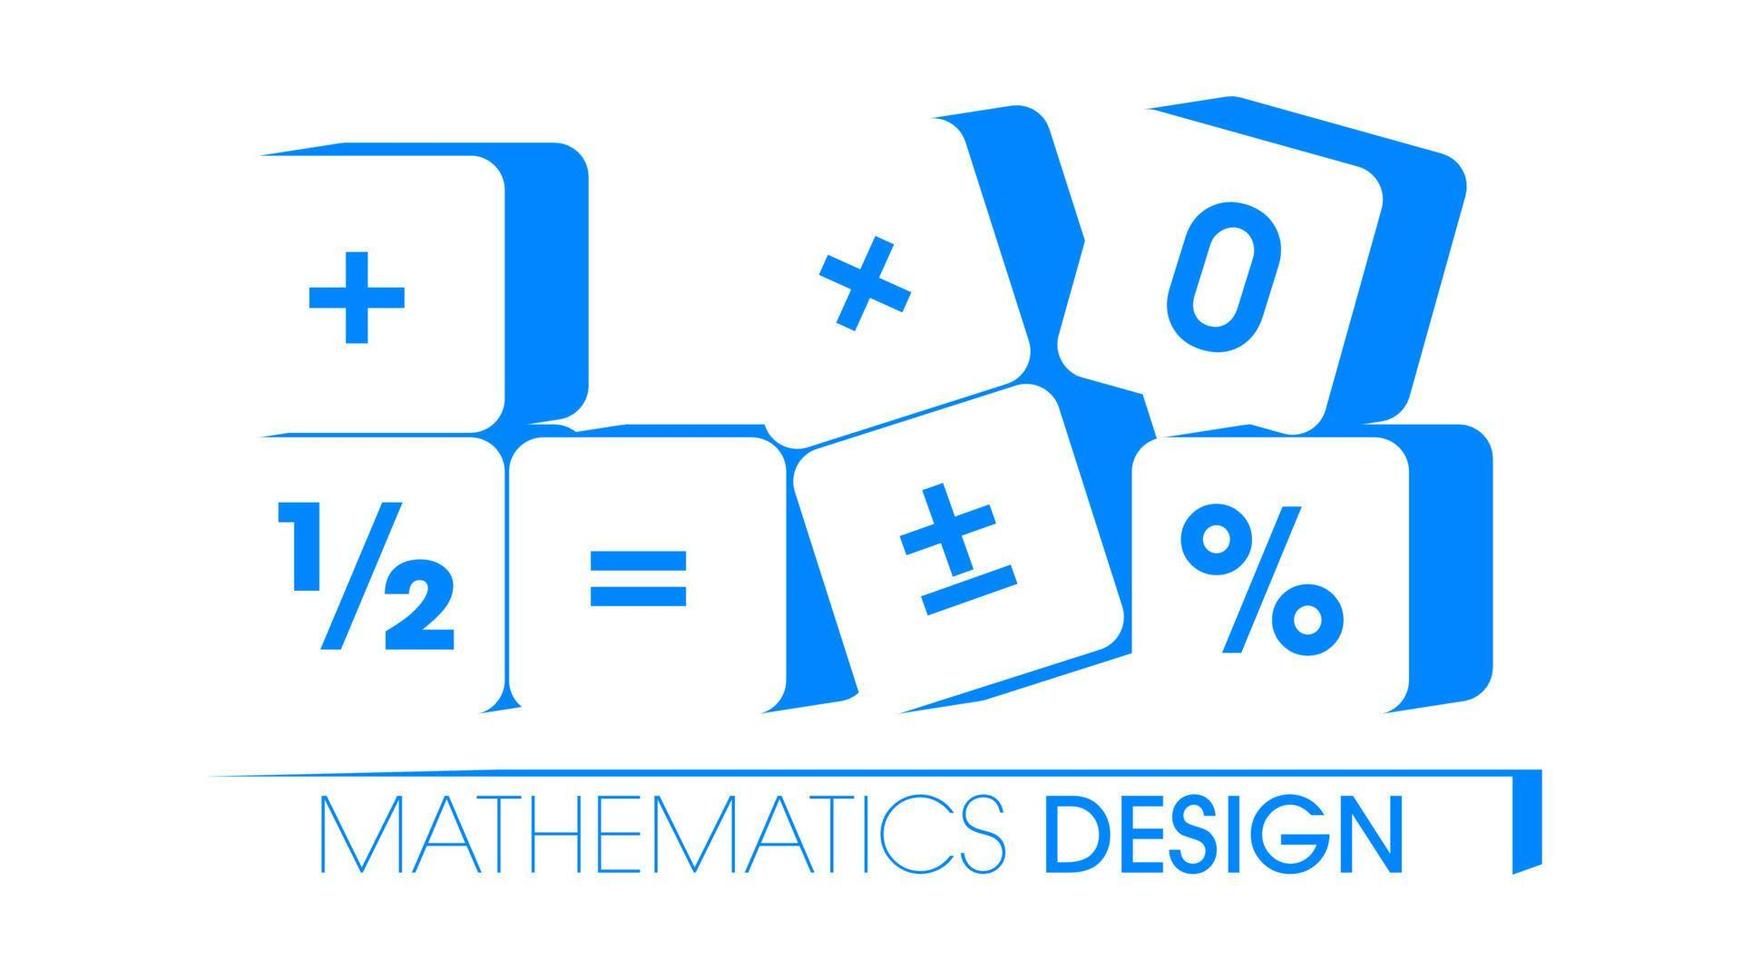 ciencia matemática de diseño de cubos para educación escolar, universidad y niños vector